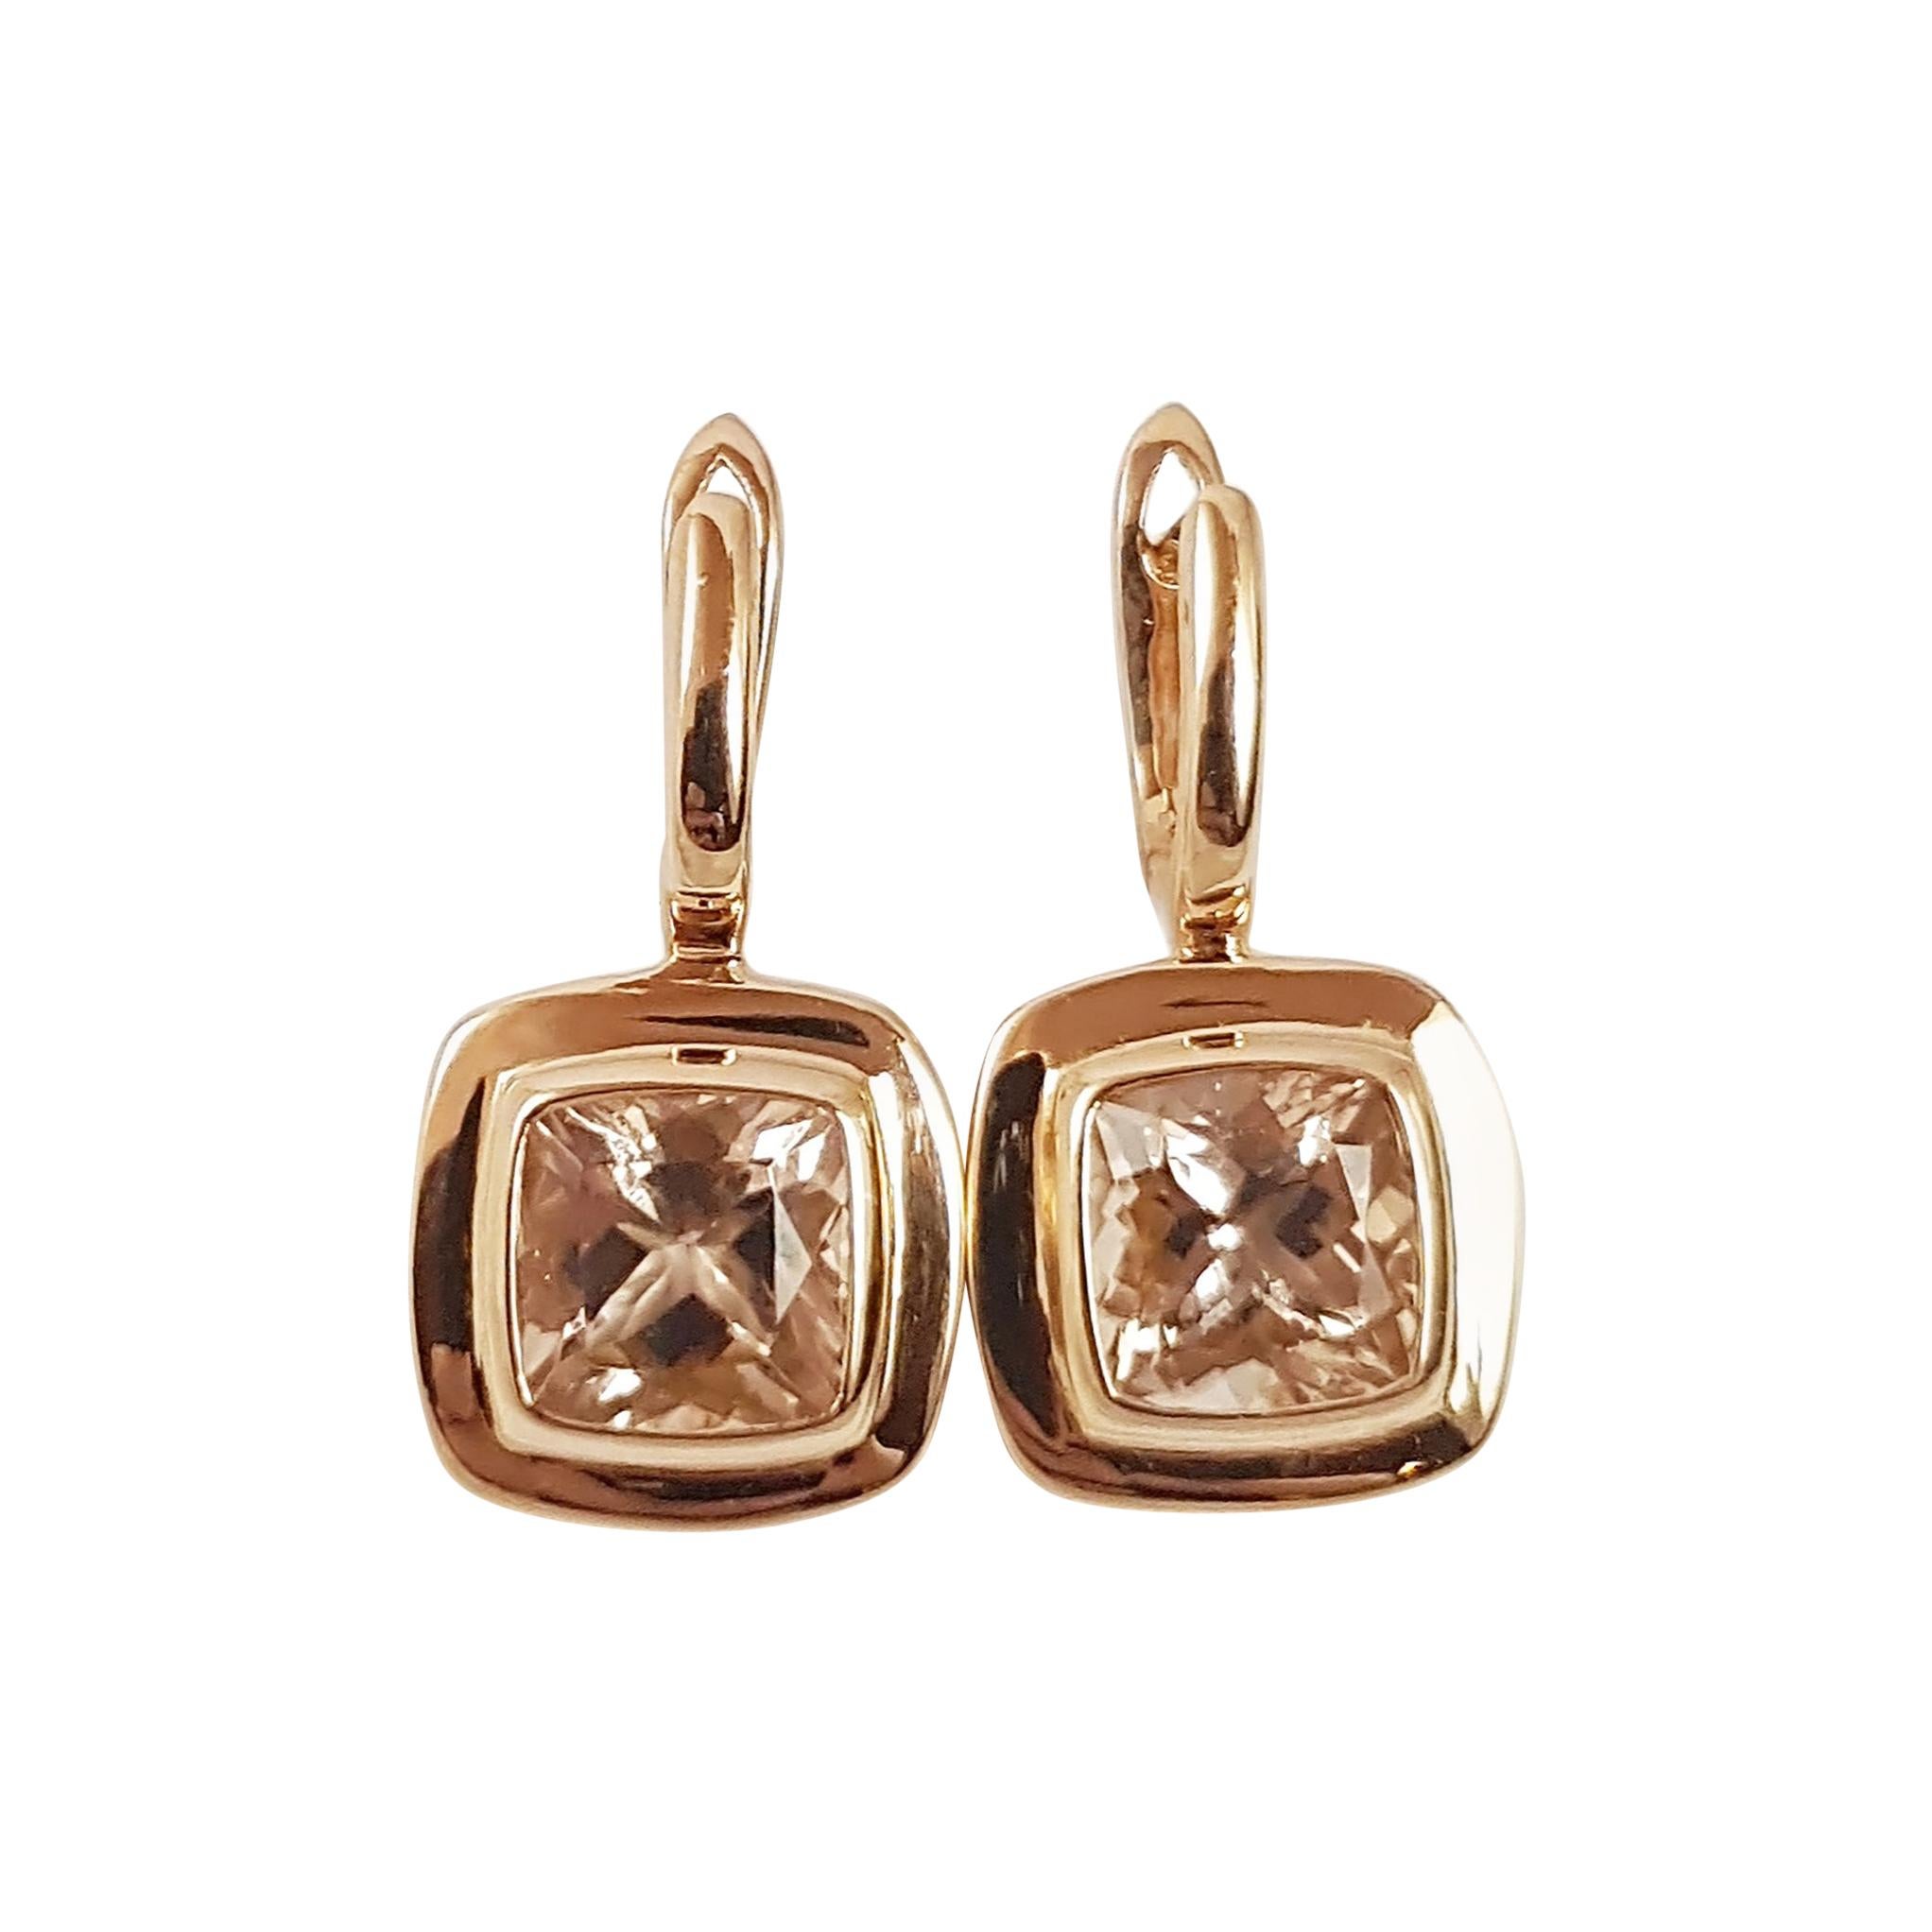 Boucles d'oreilles en Morganite serties dans des montures en or rose 18 carats